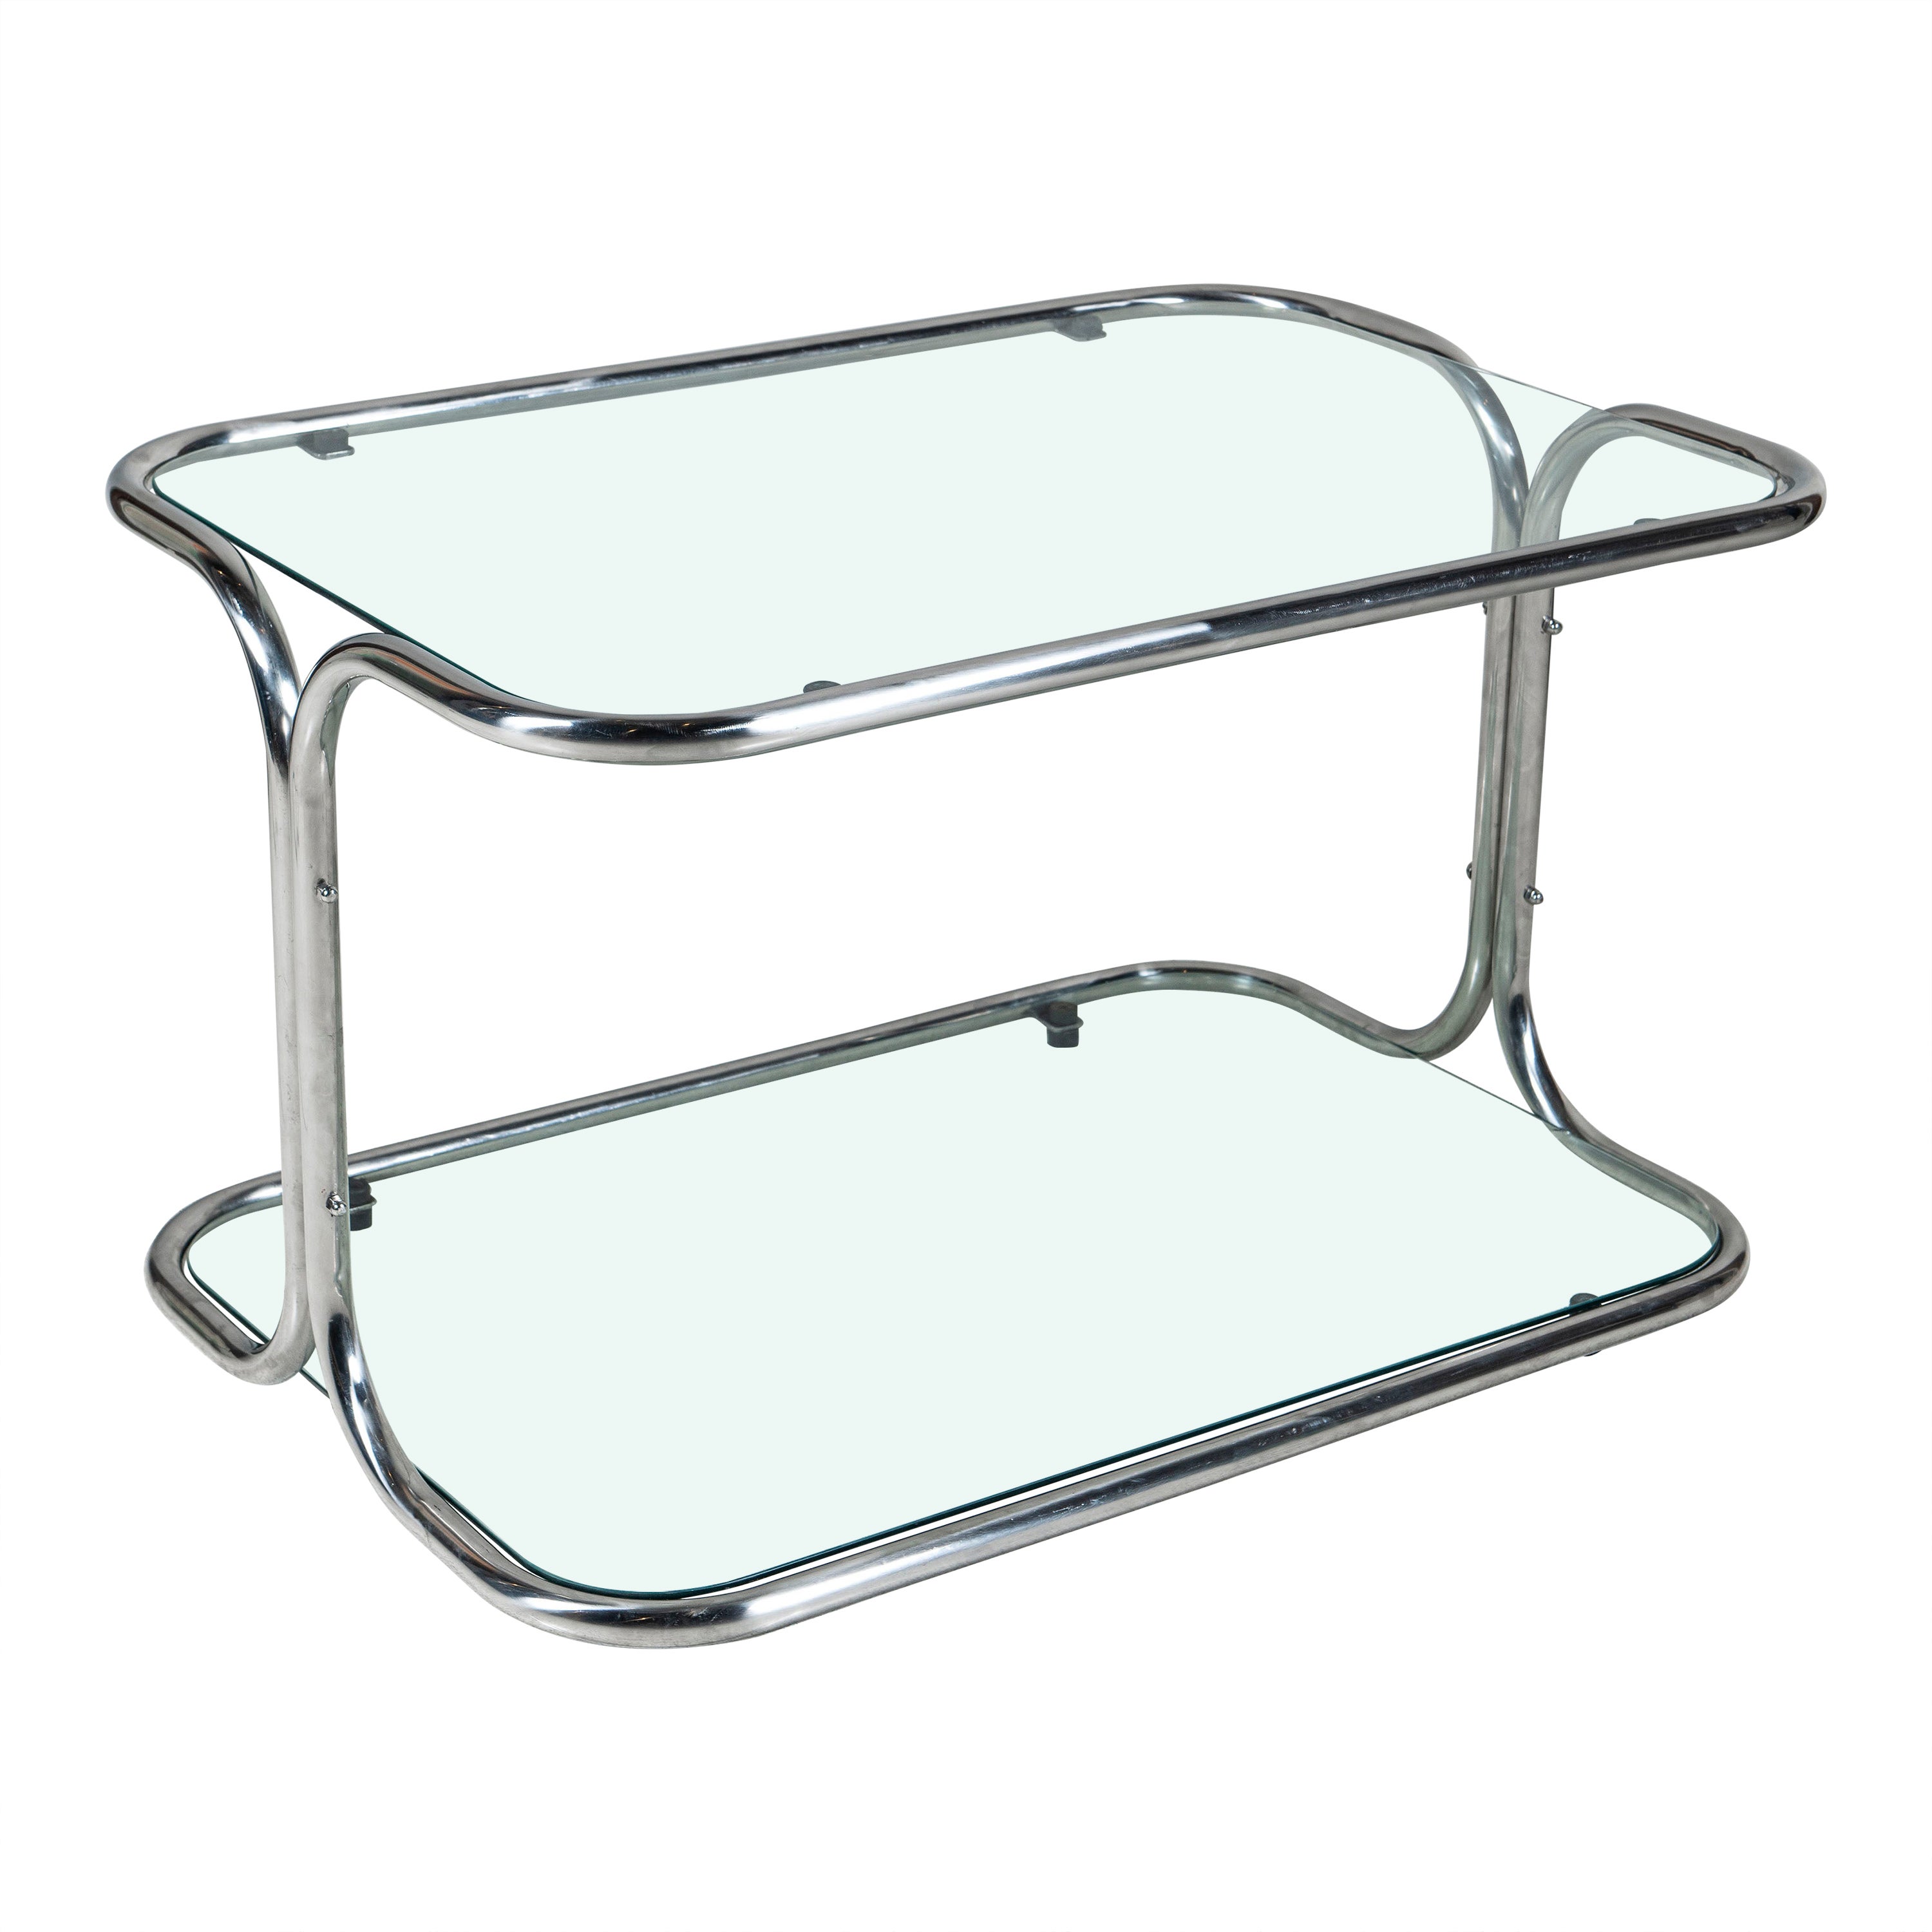 Chrome and Glass Low Table Designed by Reinaldo Leiro and Arnoldo Gaite, 1970